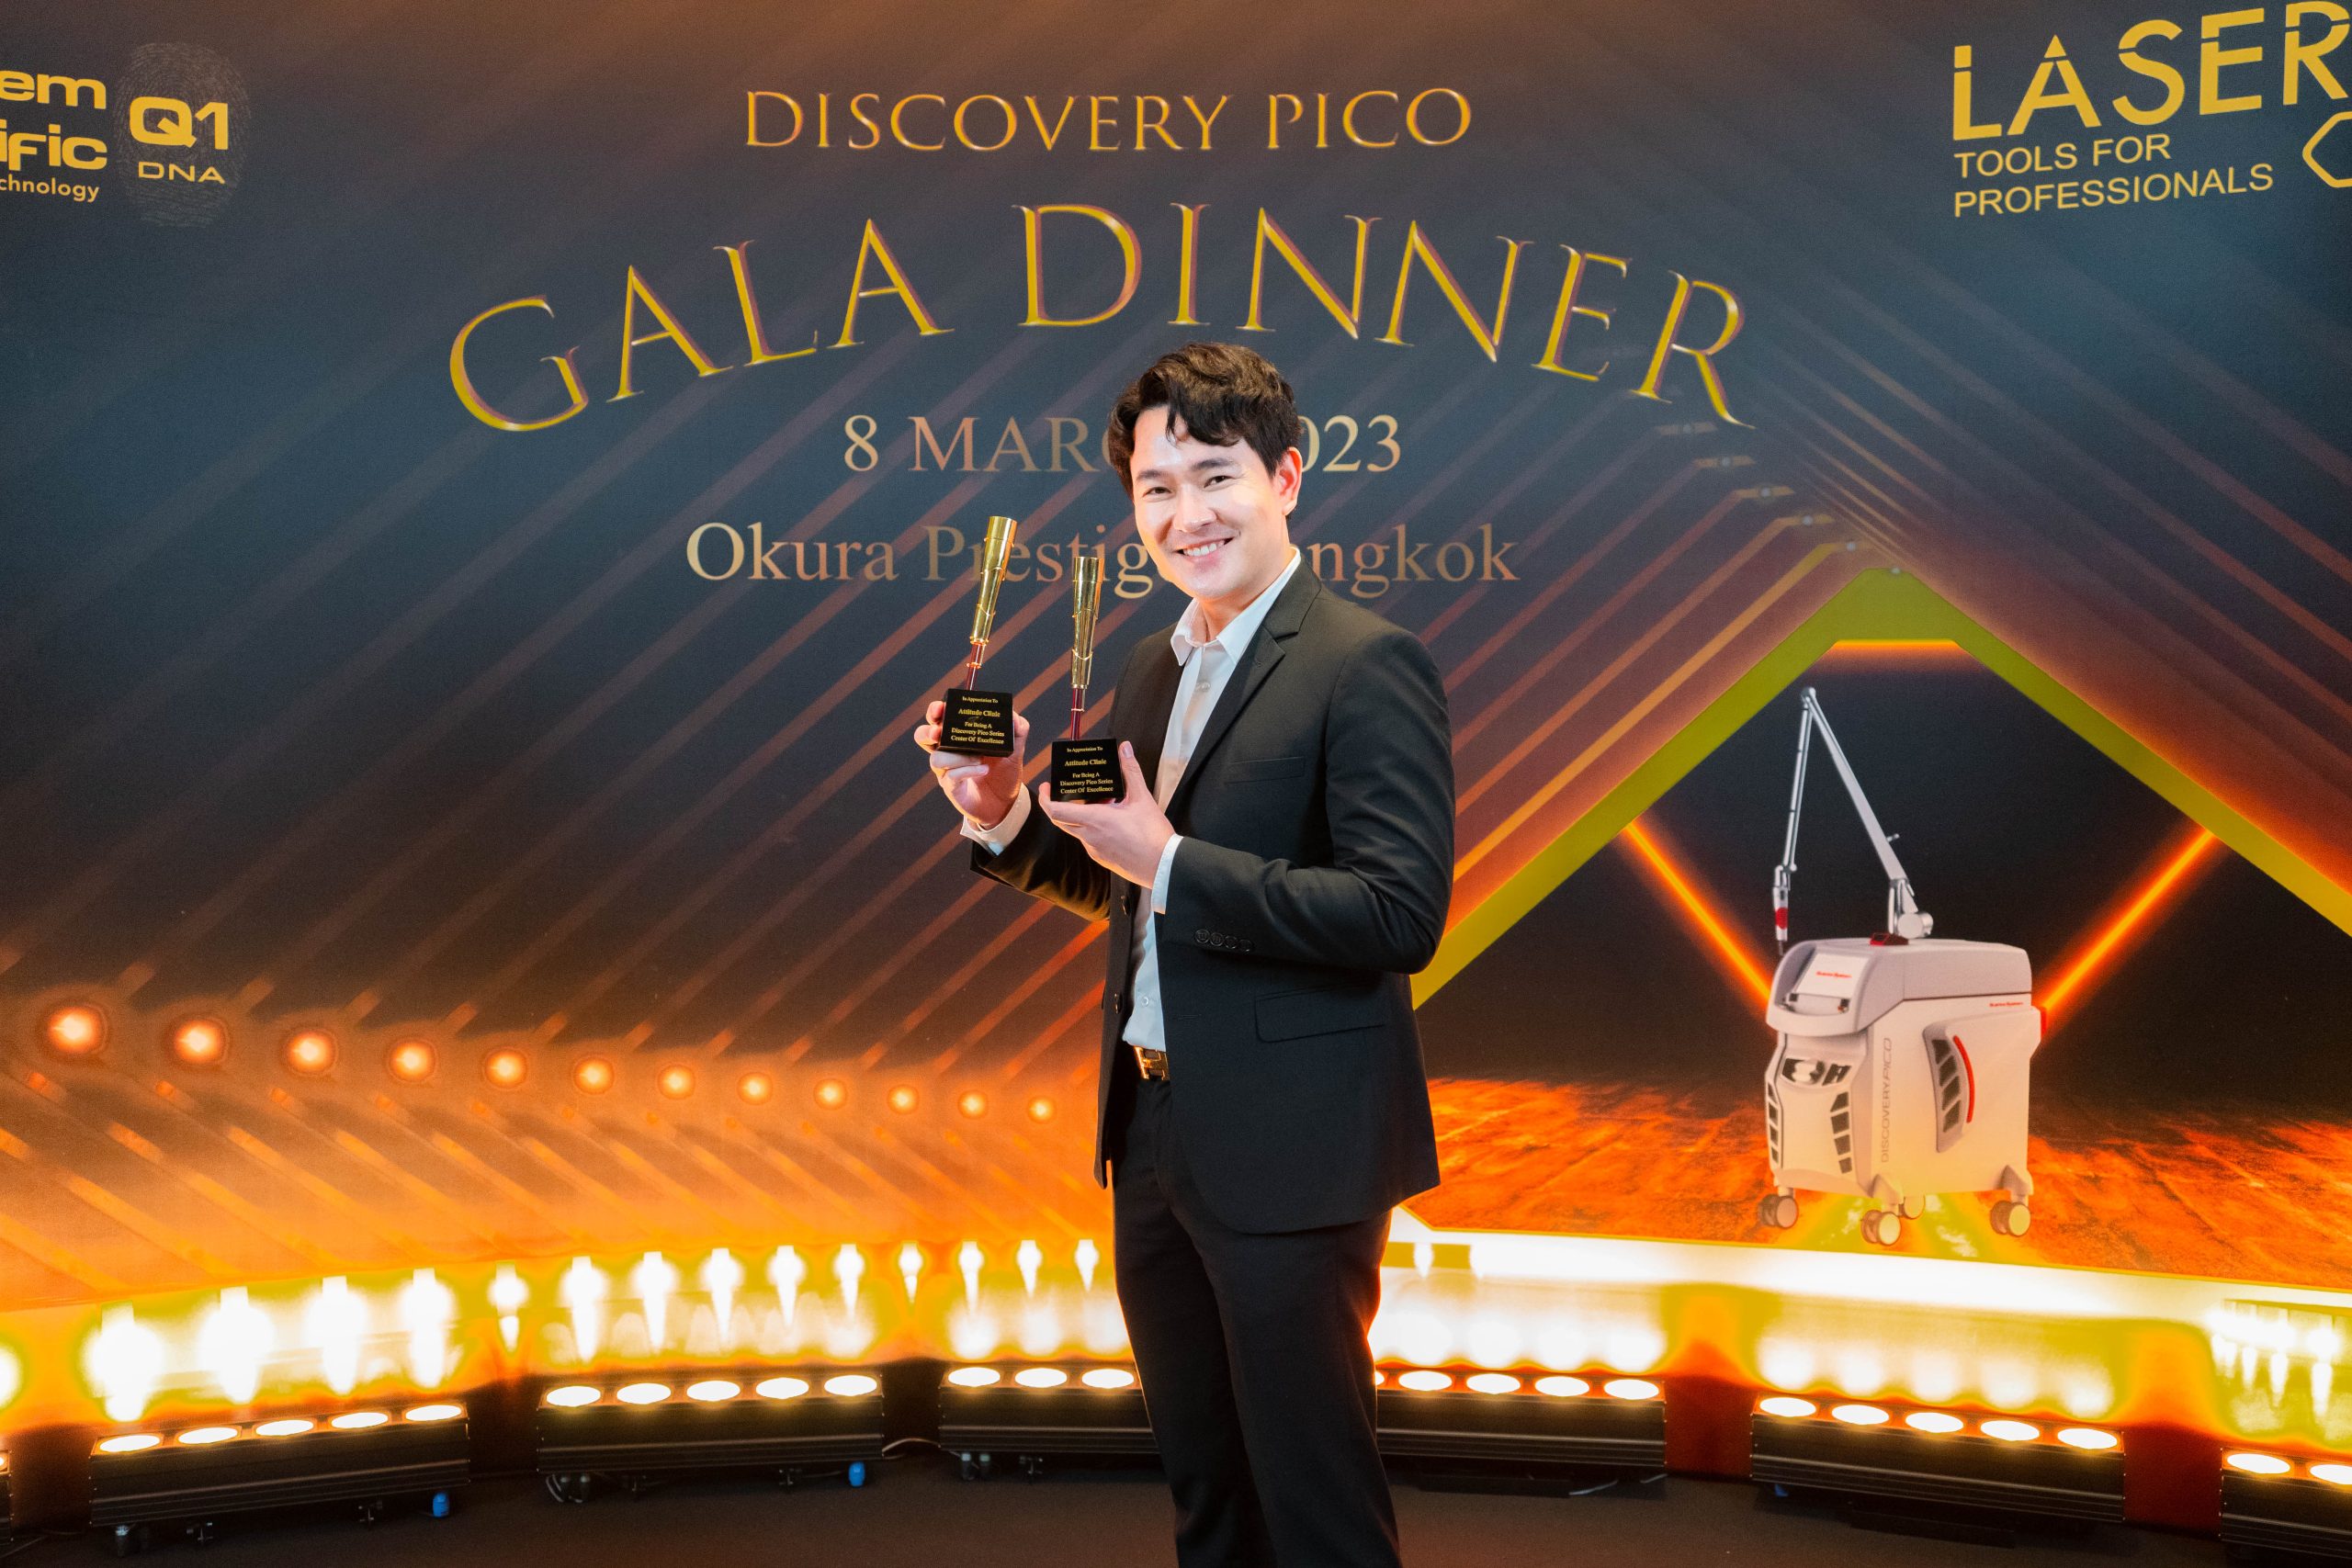 คุณหมอนุและคุณตี๋ ร่วมงาน Discovery Pico Gala Dinner ตอกย้ำความสำเร็จ Attitude Clinic รับ 2 รางวัลการันตีใช้เครื่อง Discovery Pico เครื่องแท้จากบริษัทโดยตรง